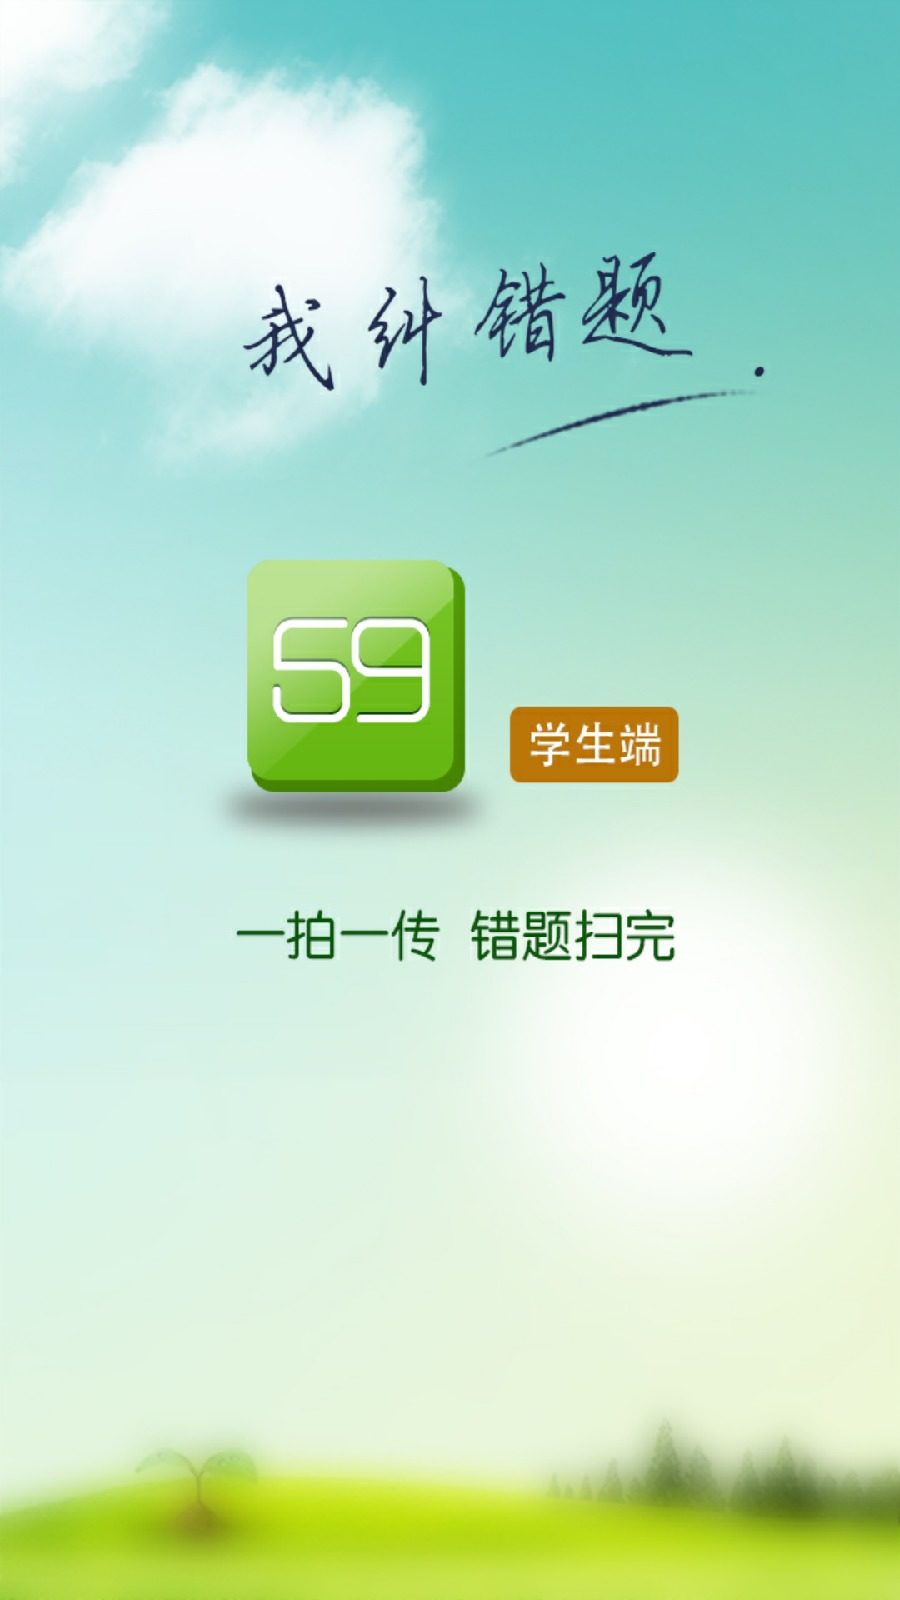 龙文教育59错题学生端苹果客户端 v6.0.6 官网iphone越狱版2